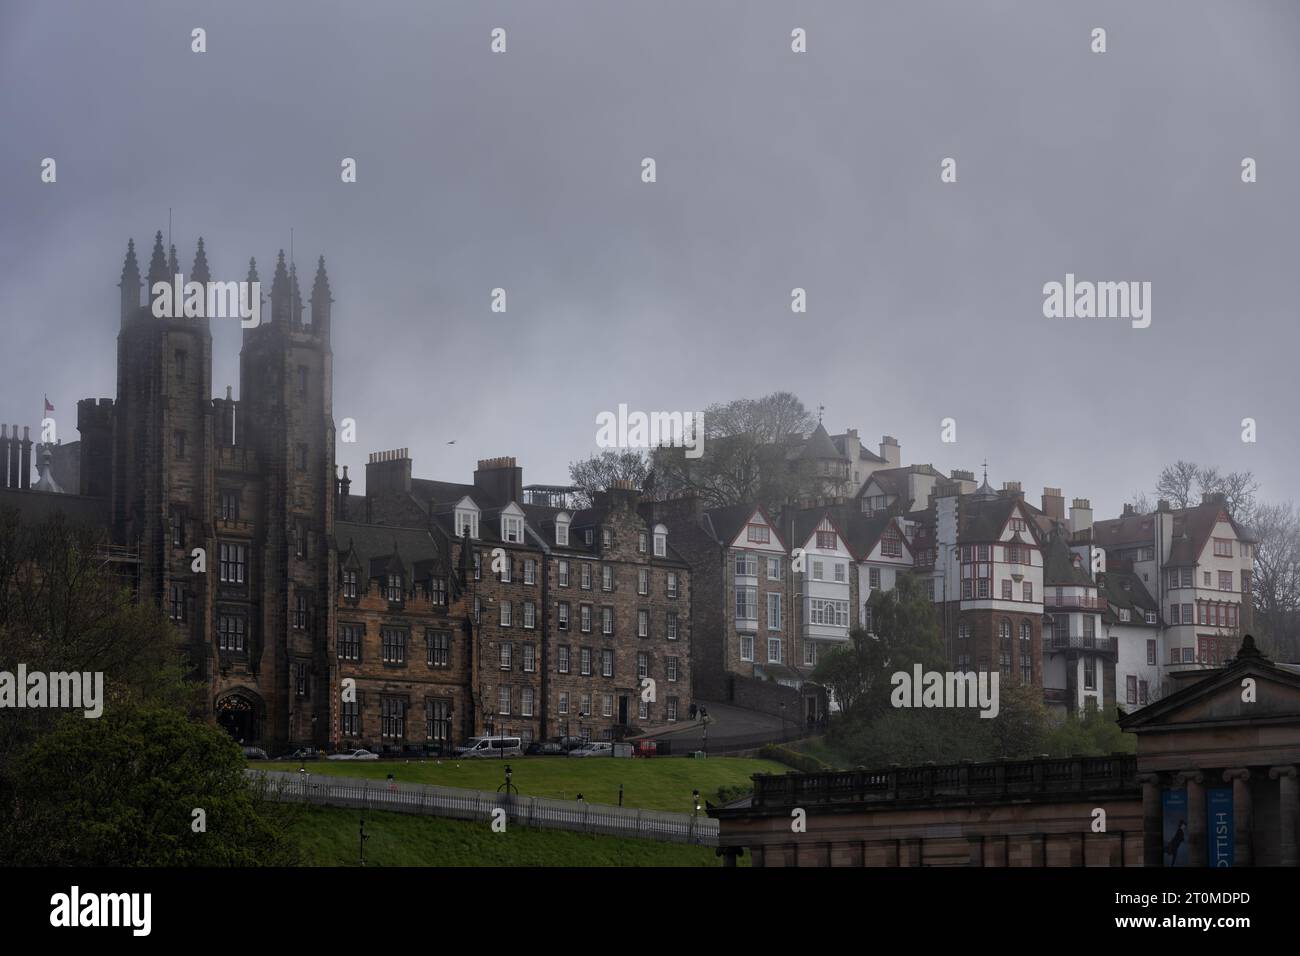 Vieille ville d'Edimbourg ville sur un jour brumeux, sombre en Écosse, Royaume-Uni. Skyline avec New College sur les maisons Mound et Ramsay Garden. Banque D'Images